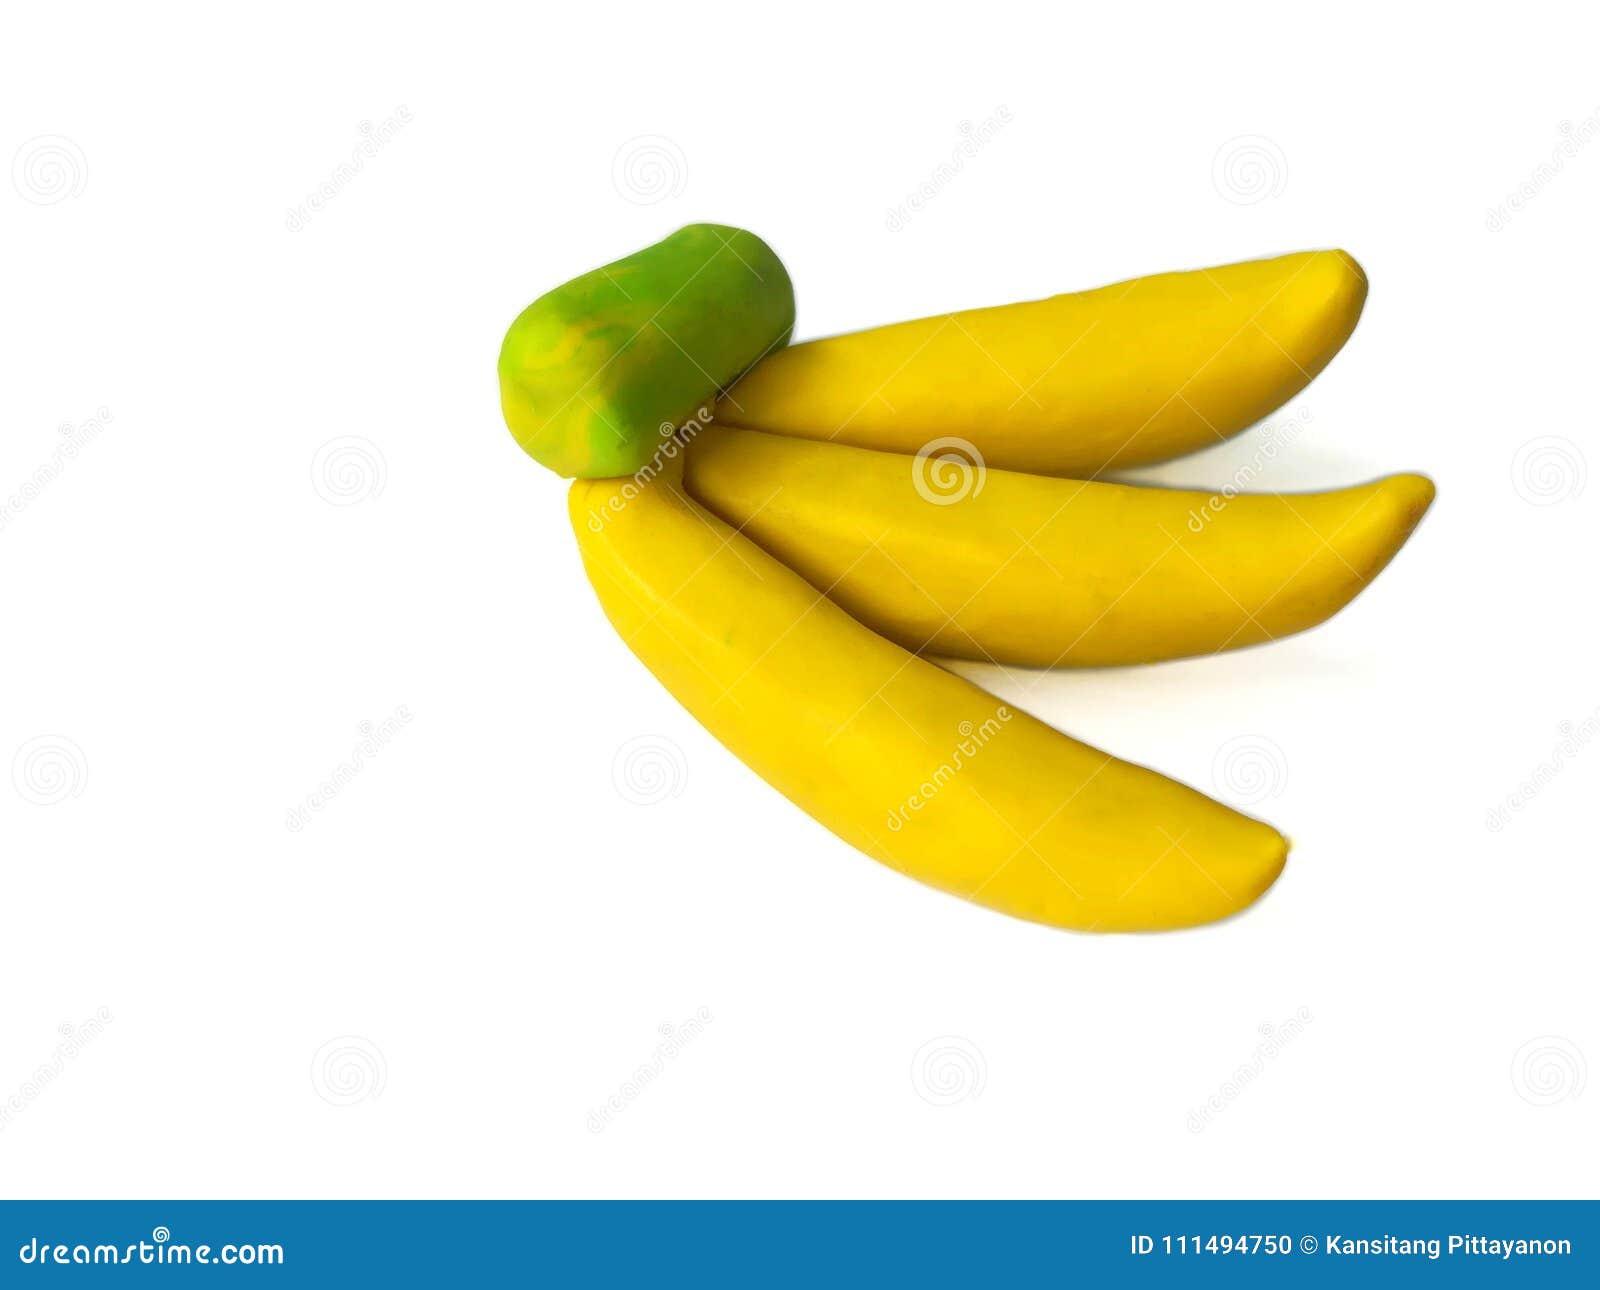 Банан из пластилина. Лепка банан. Юананылепка из пластилина для детей. Лепка банана из пластилина.